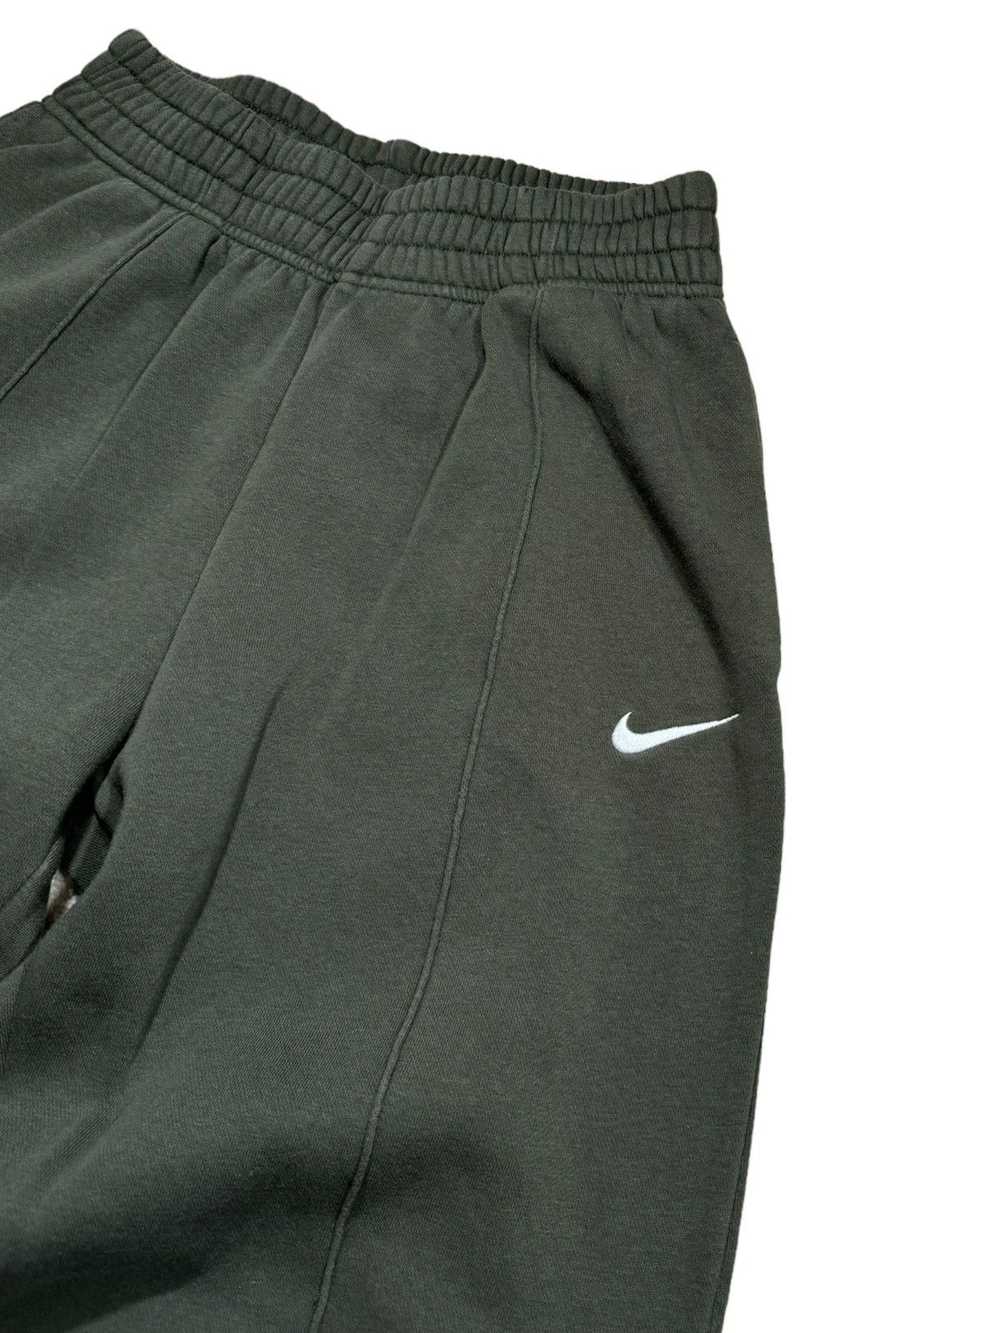 Nike × Streetwear Nike Sportswear Sweatpants - image 3